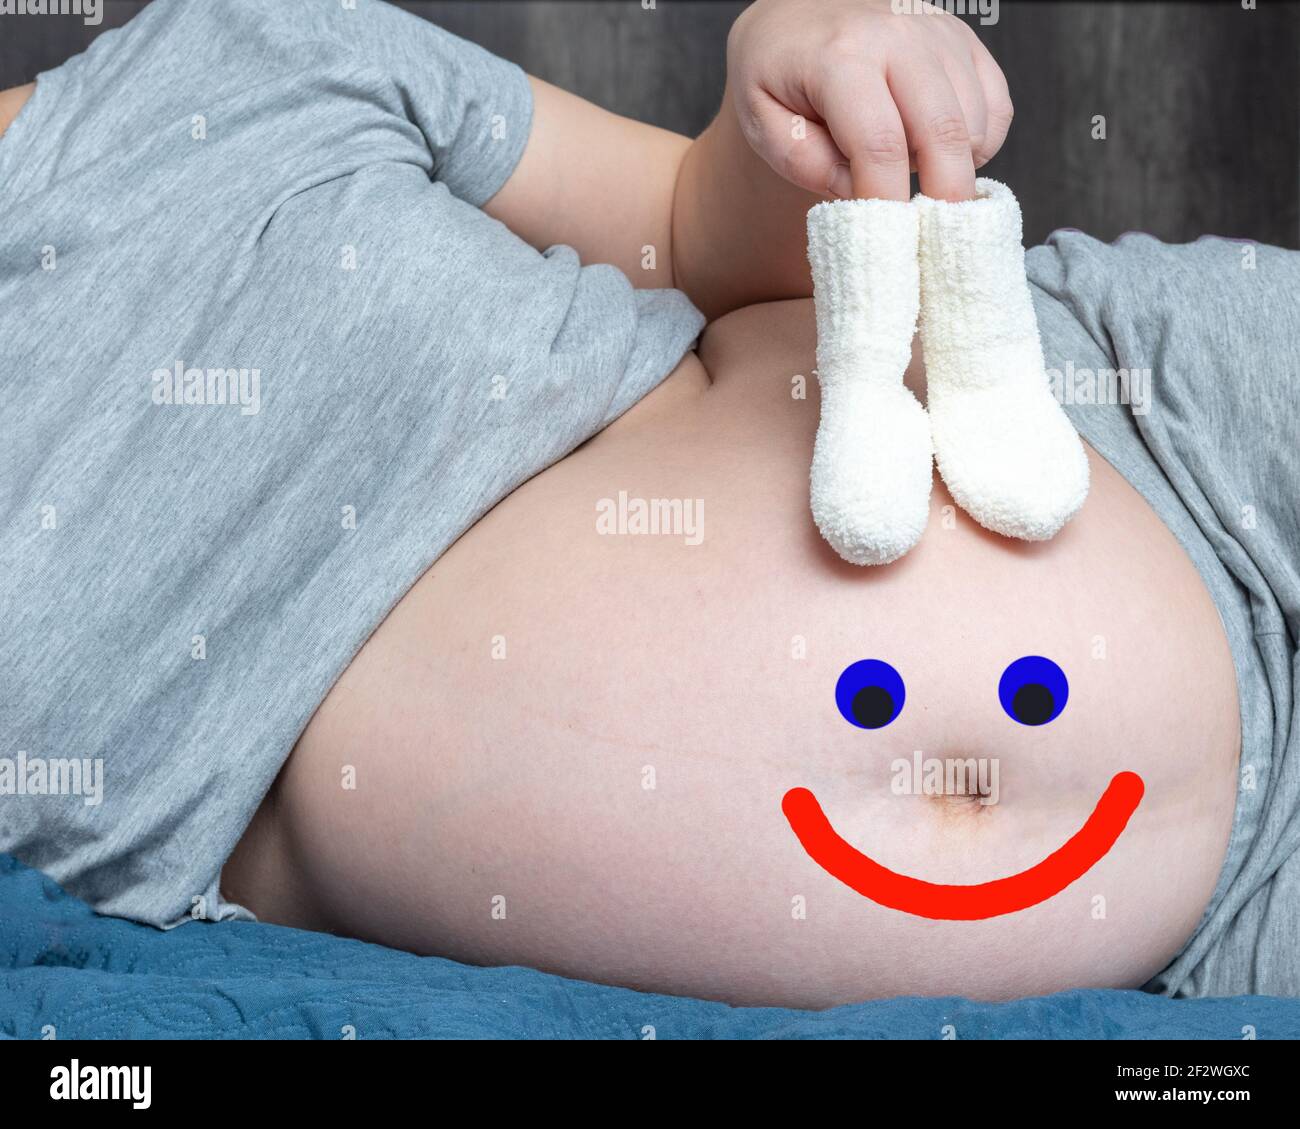 Juste pour le plaisir. Une femme enceinte tenant bébé tricoté petites  chaussettes dans ses mains et un sourire heureux dessiné sur son ventre.  Concept de grossesse joyeuse Photo Stock - Alamy